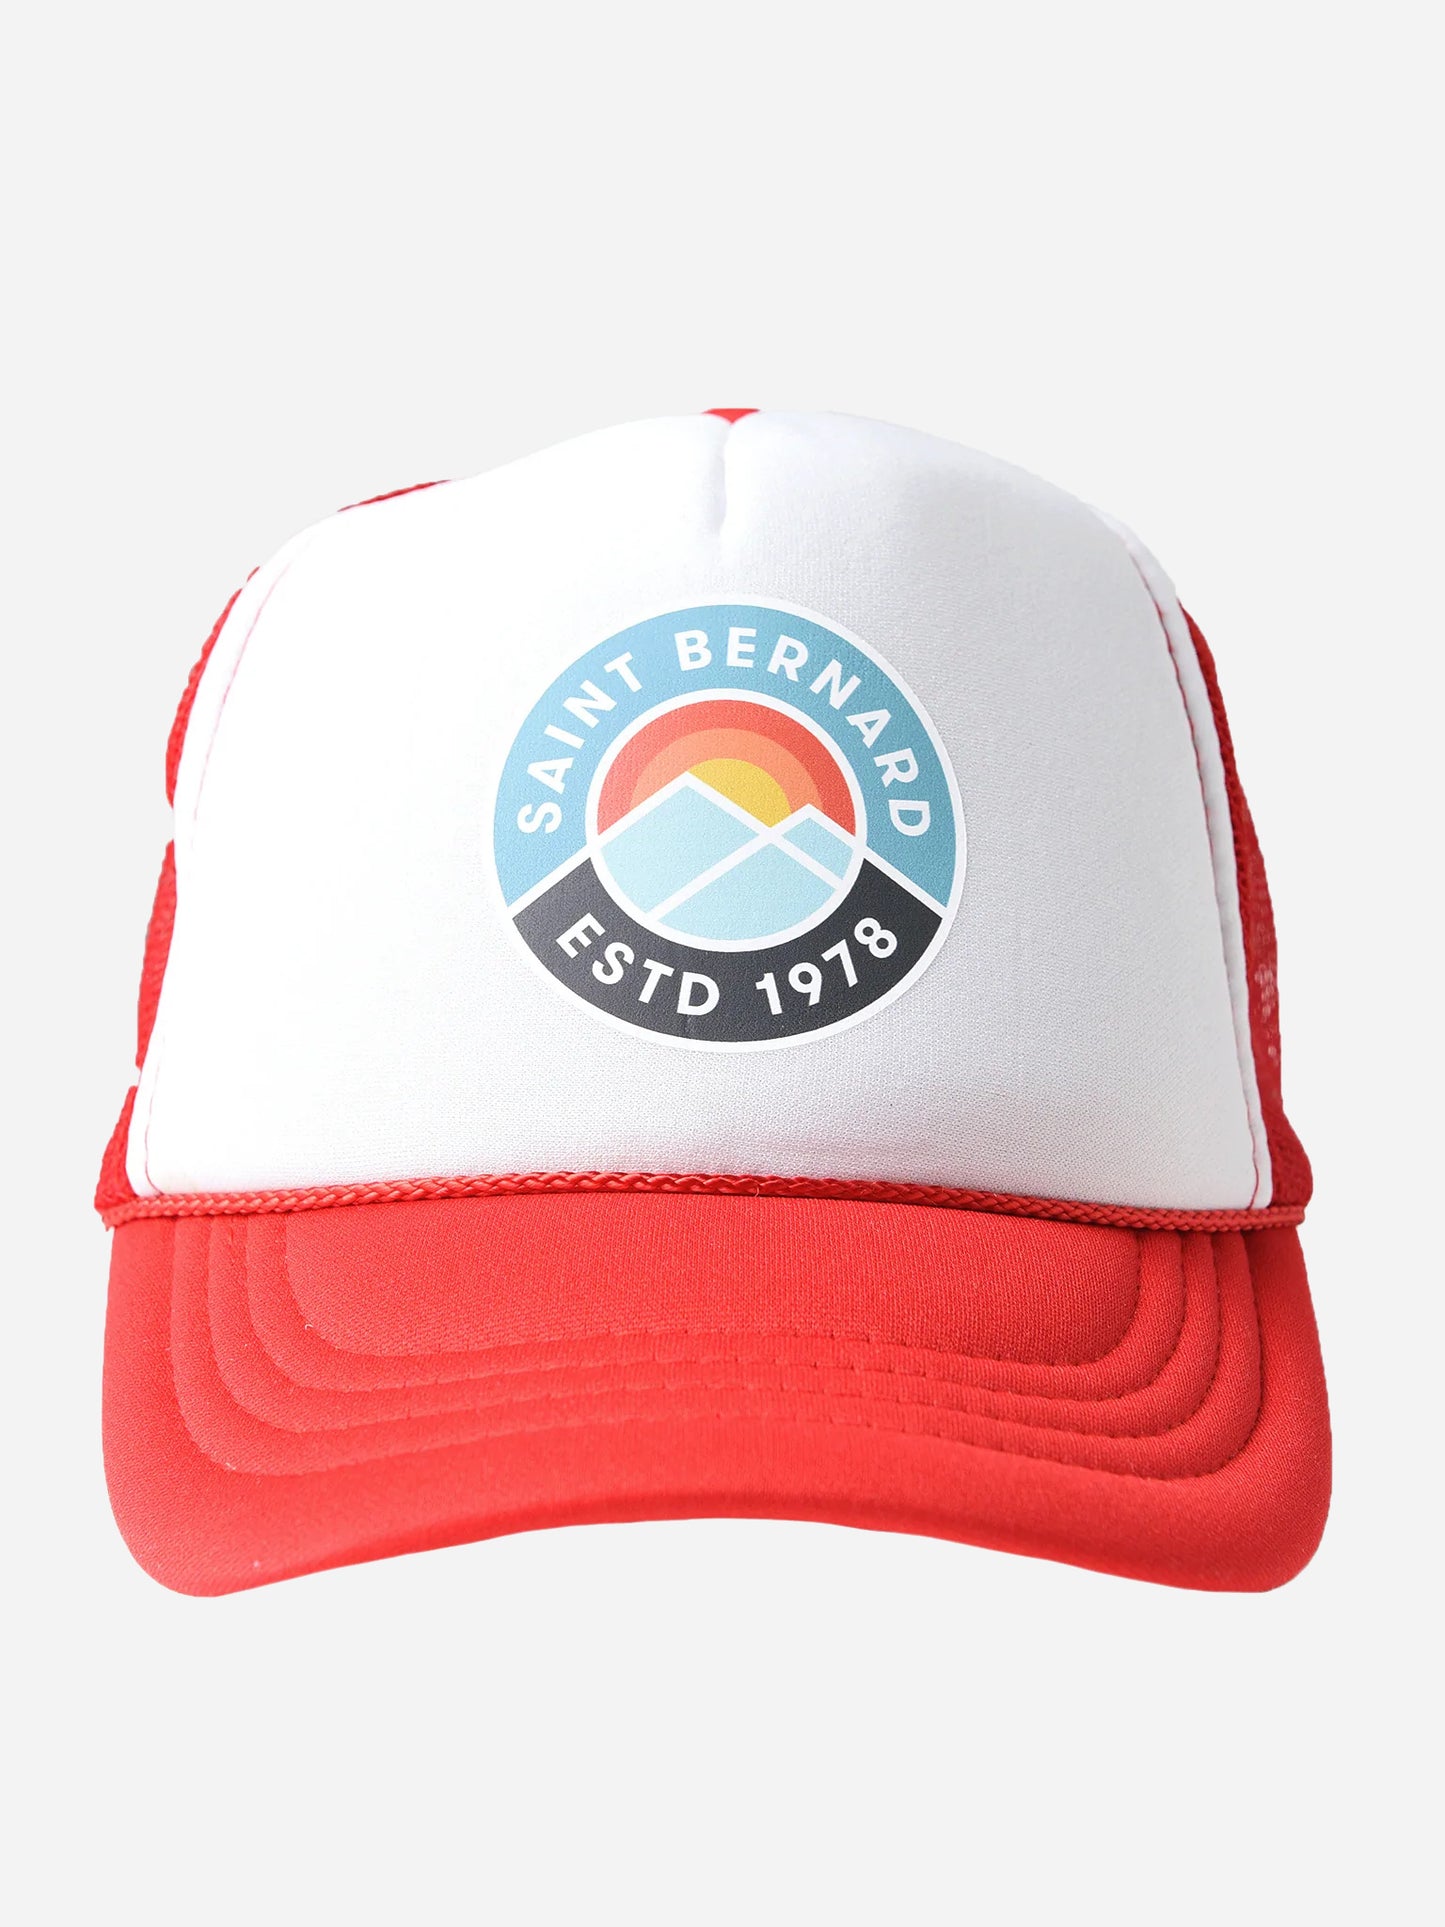 Saint Bernard Kids' Trucker Hat